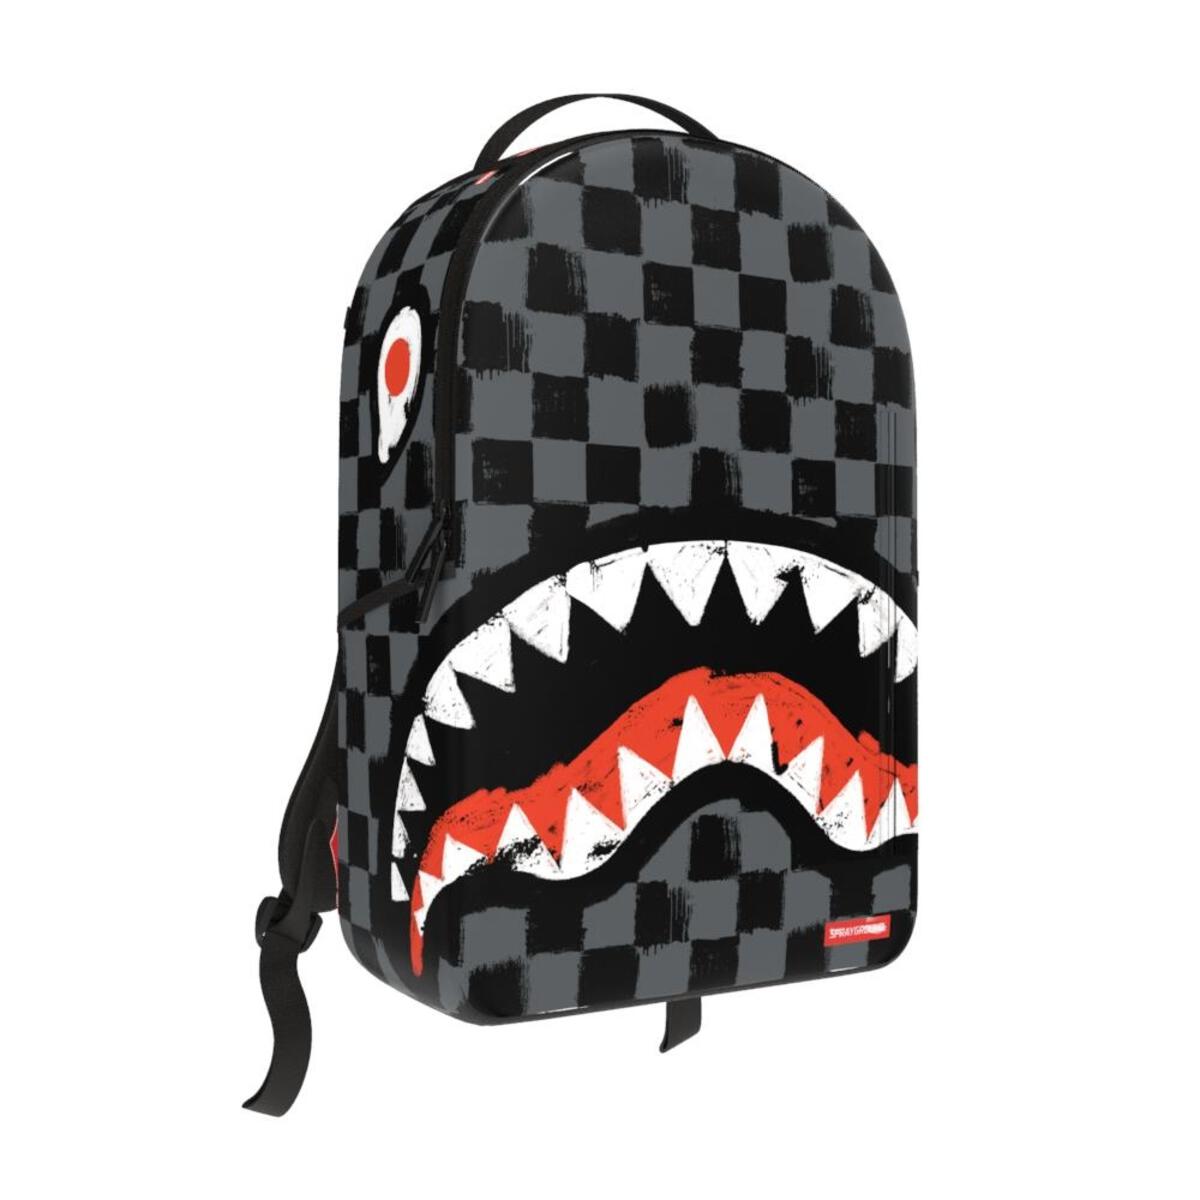 SPRAYGROUND: Sharks in Paris Paint Grey DLXSV Backpack